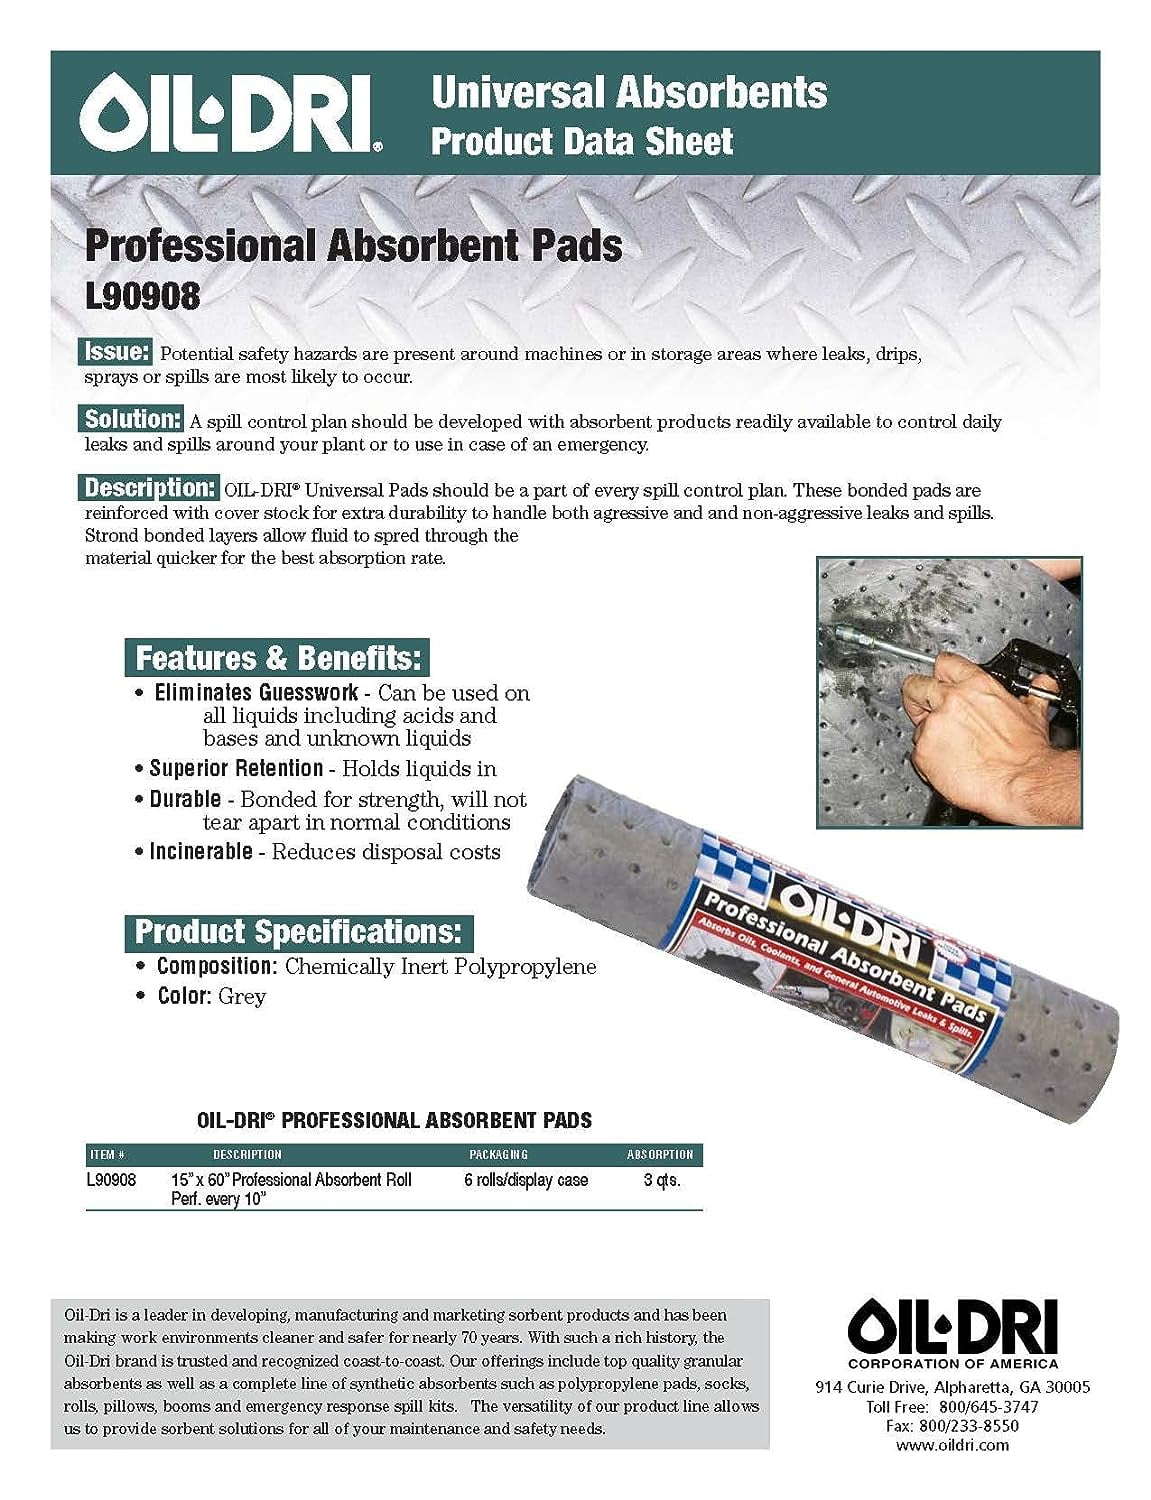 Oil-Dri Professional Absorbent Pad Roll, Gray, 15 x 60 